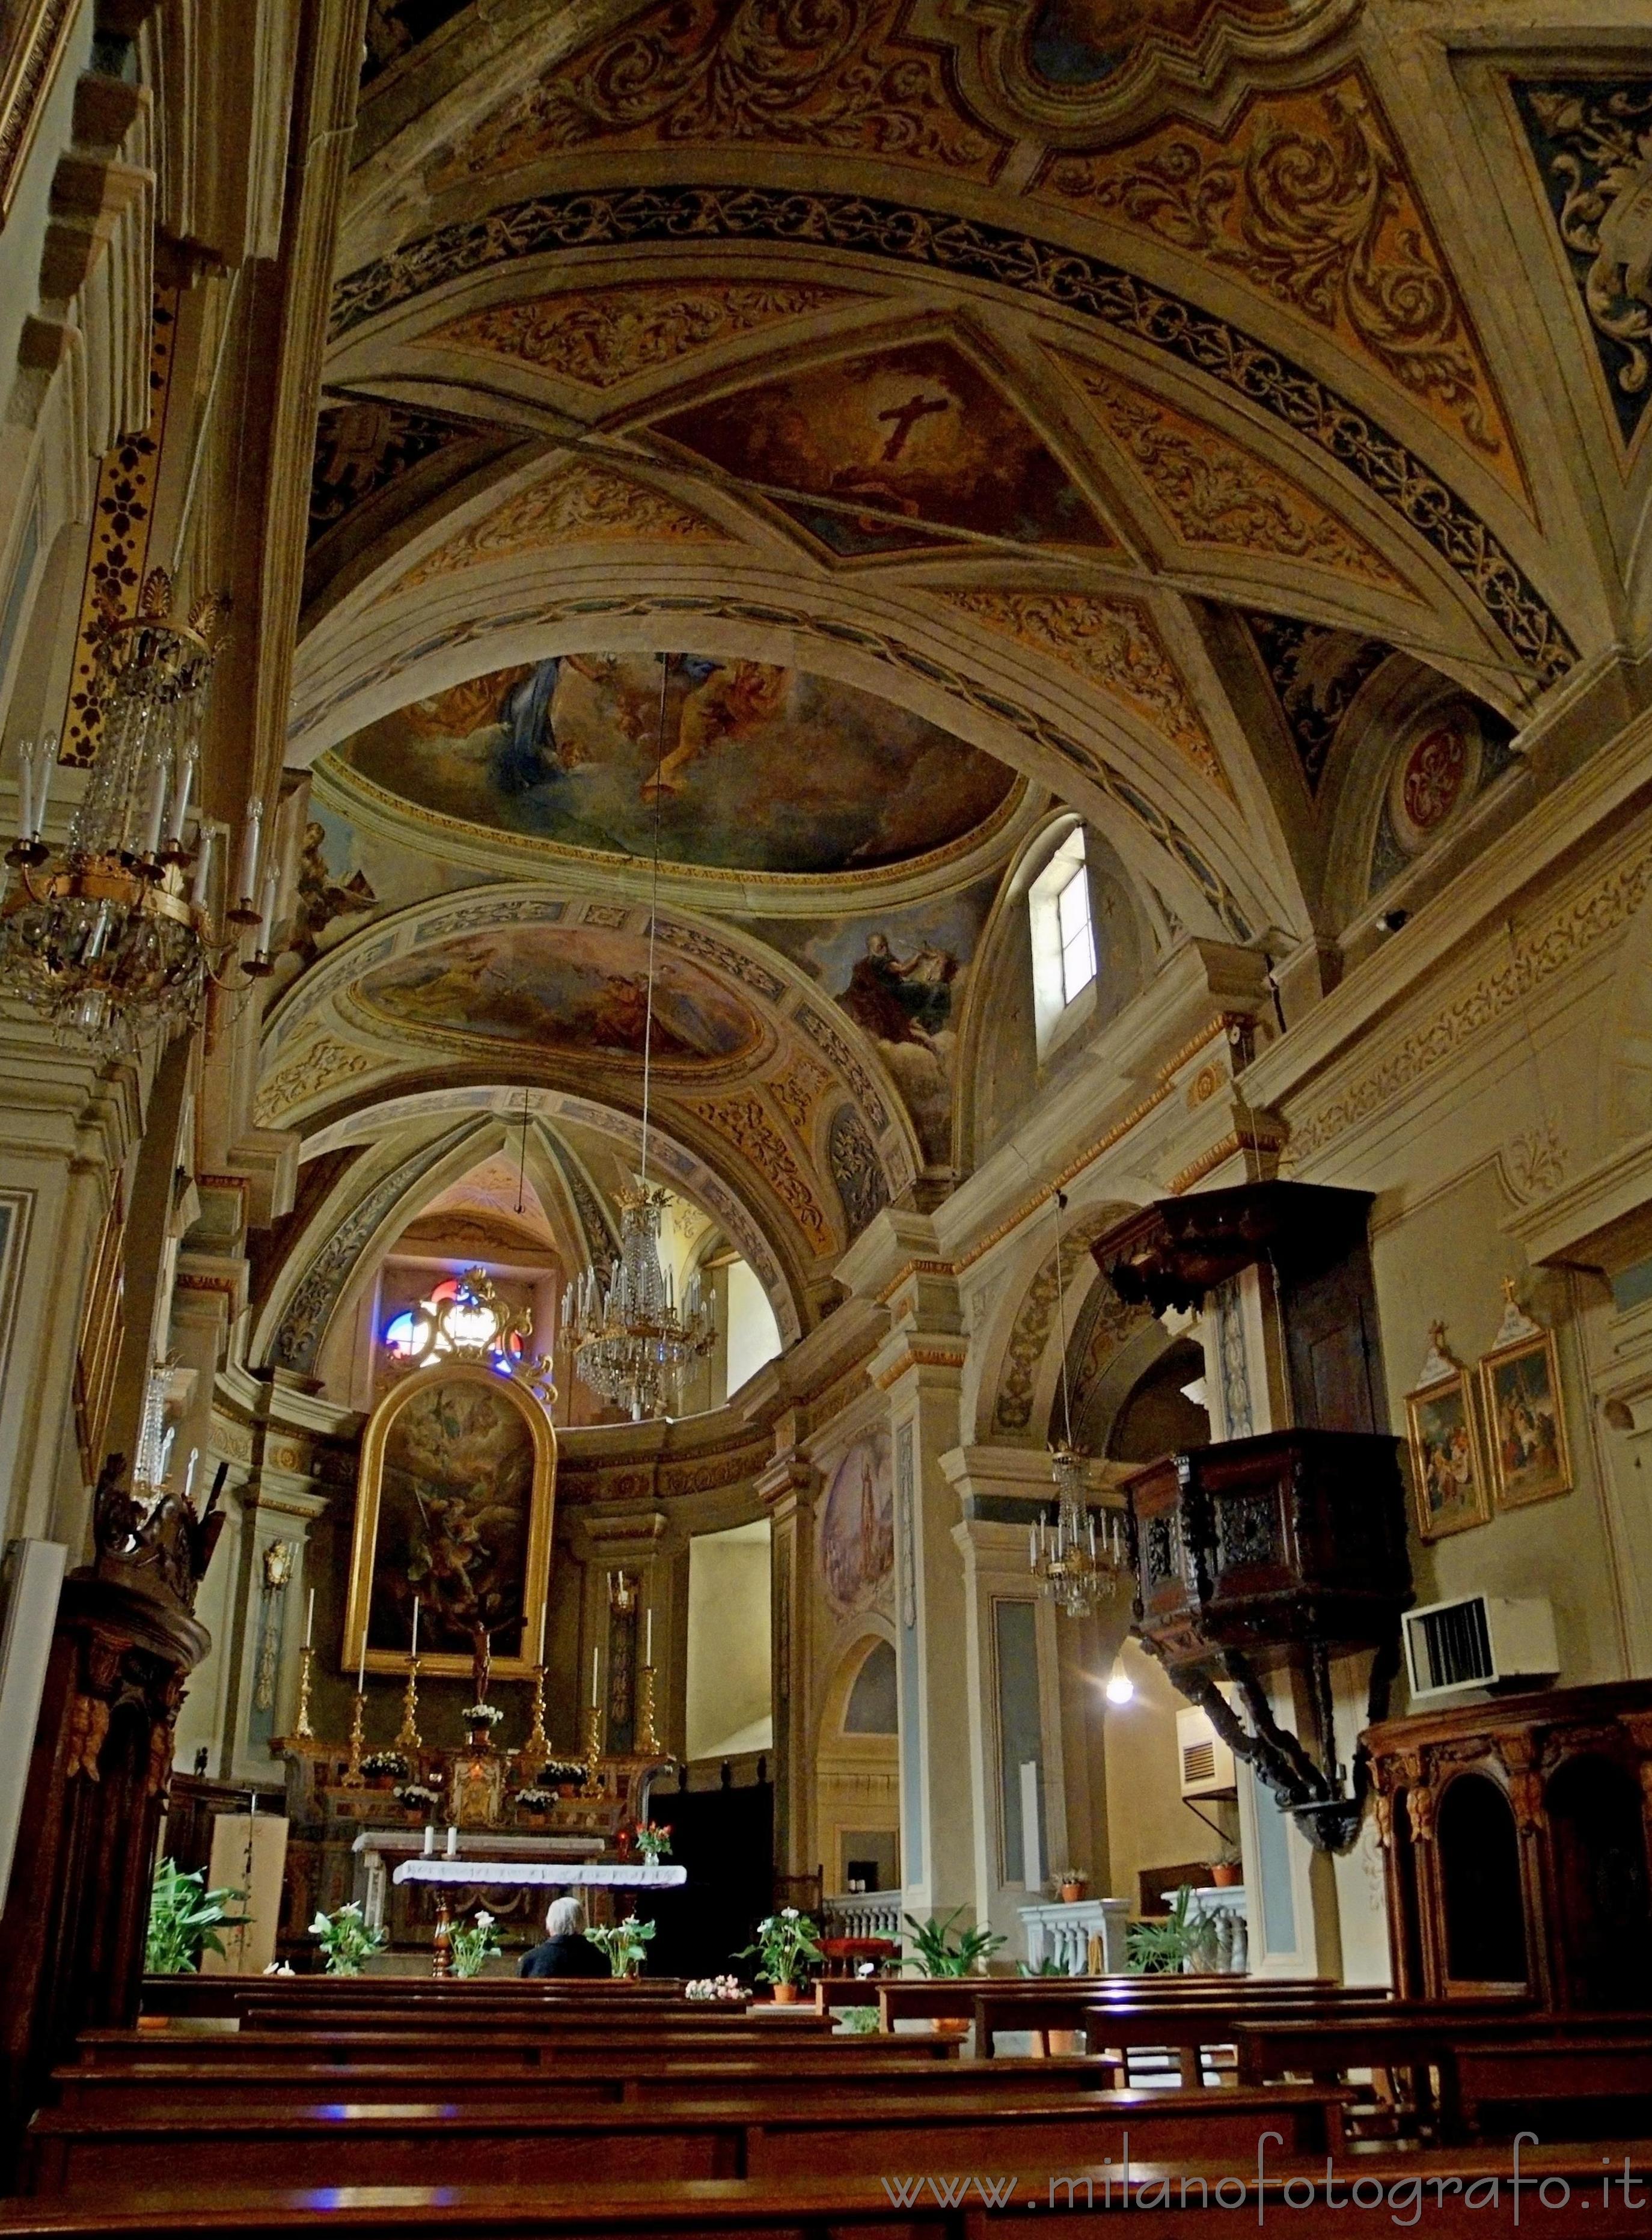 Piedicavallo (Biella, Italy): Parochial church - Piedicavallo (Biella, Italy)